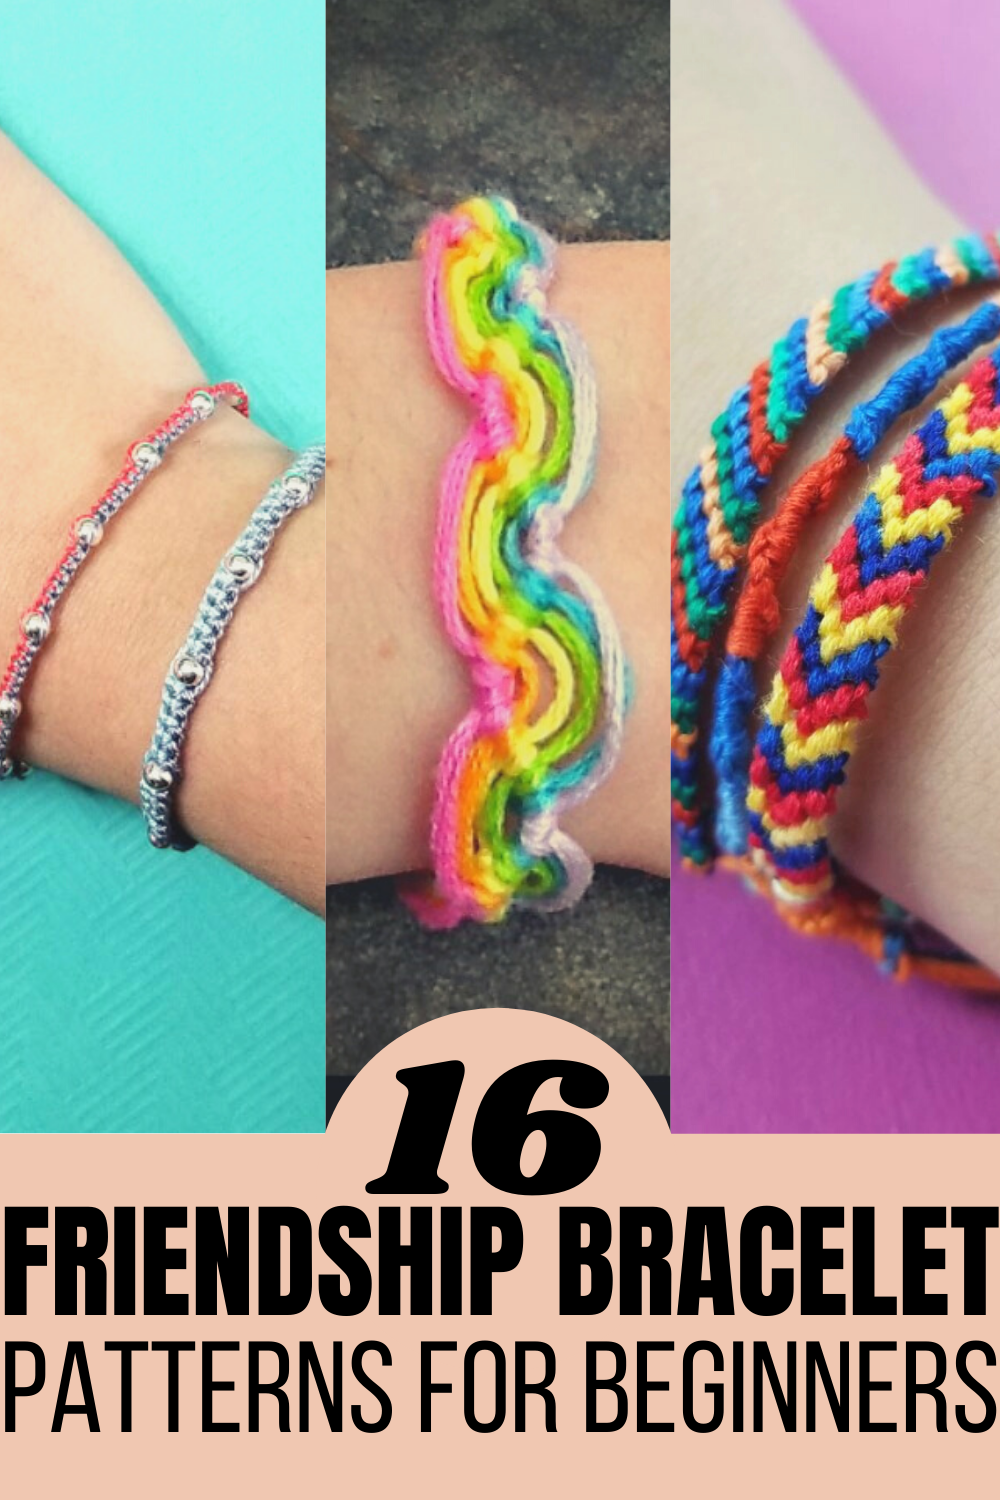 17 Friendship Bracelet Patterns